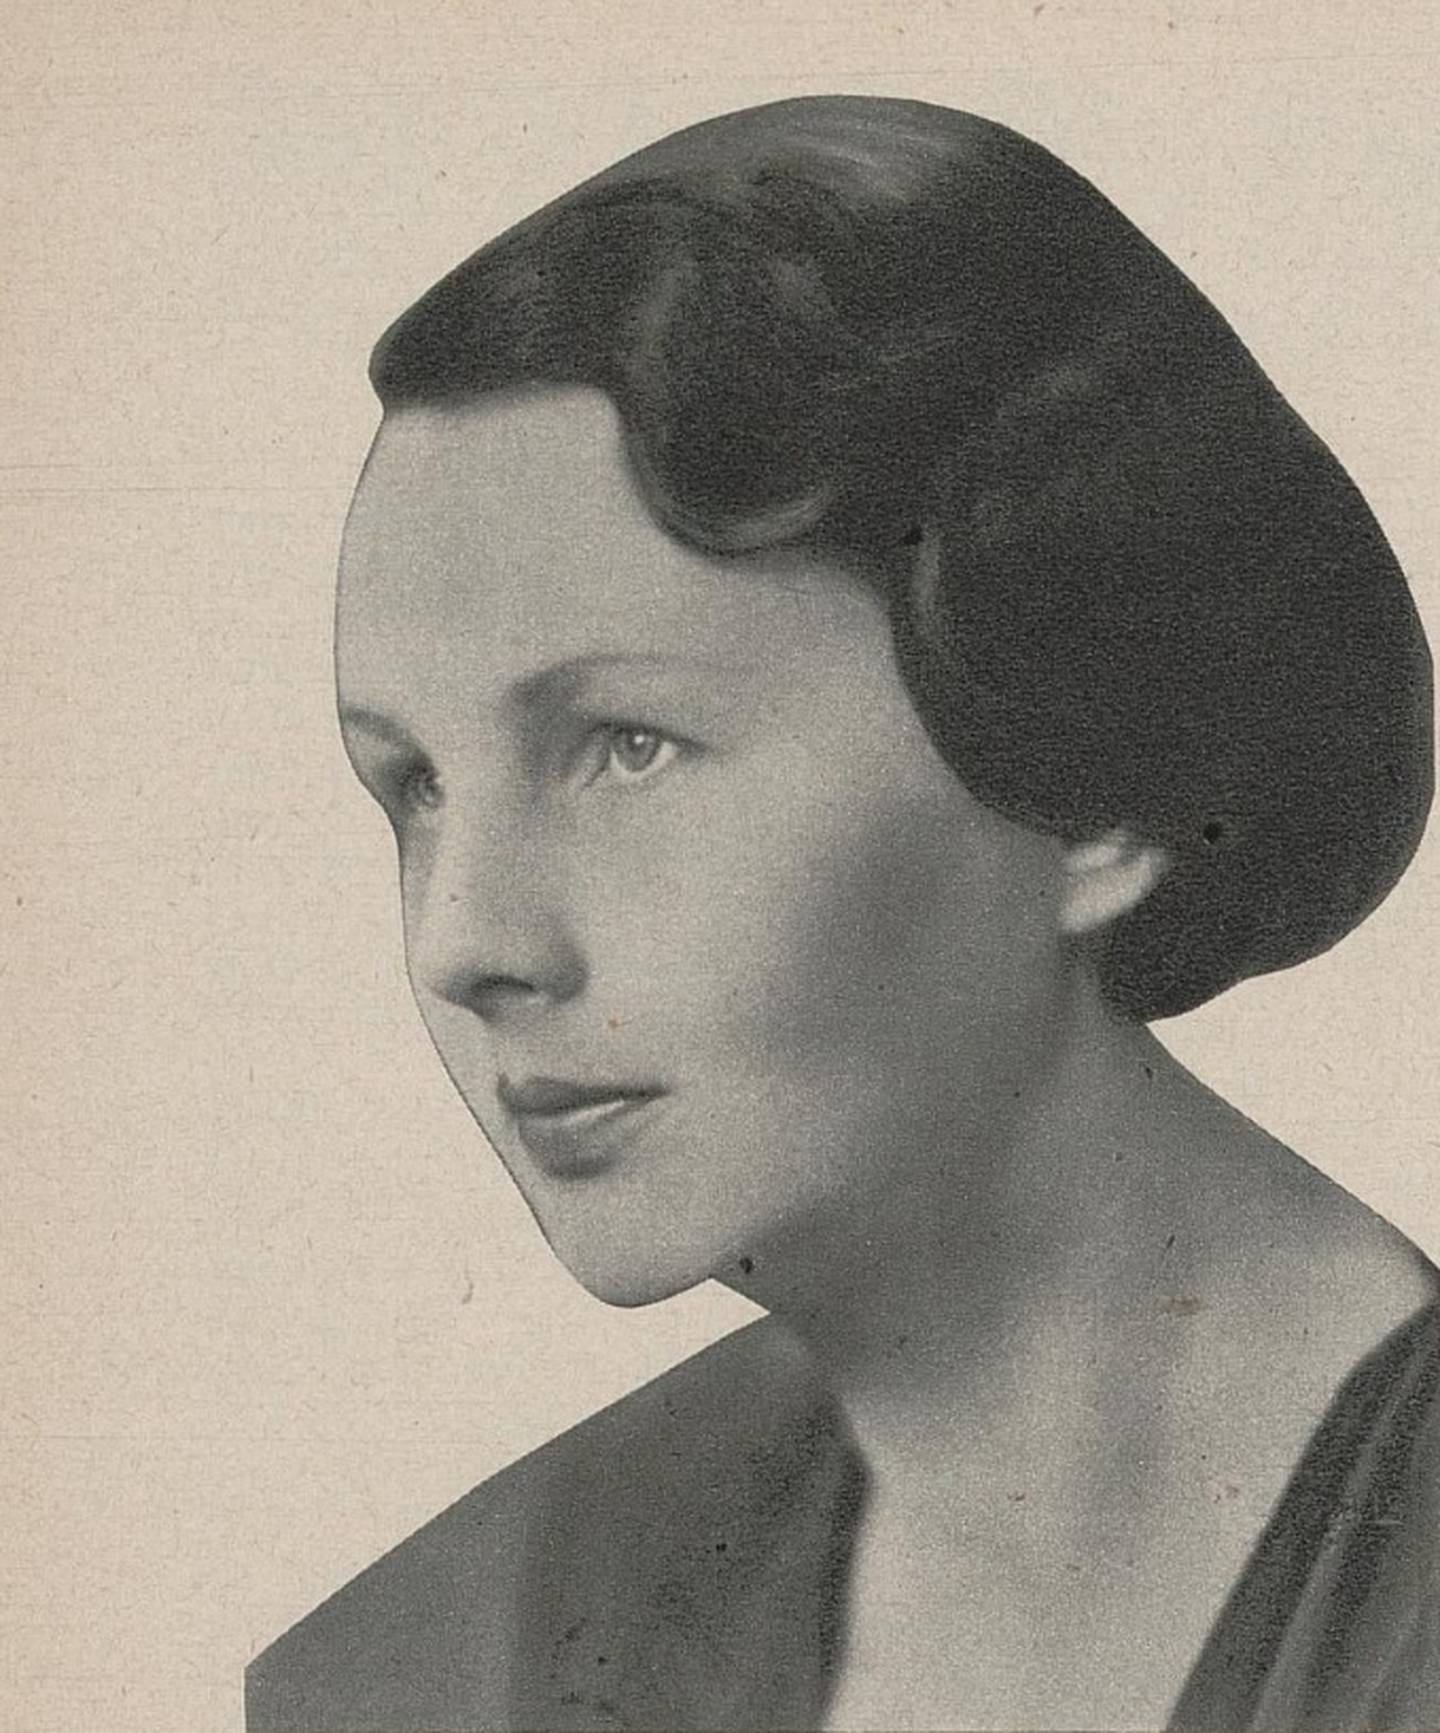 Alette Bull i 1935. (Urd 1935 Vol. 39 Nr. 3)